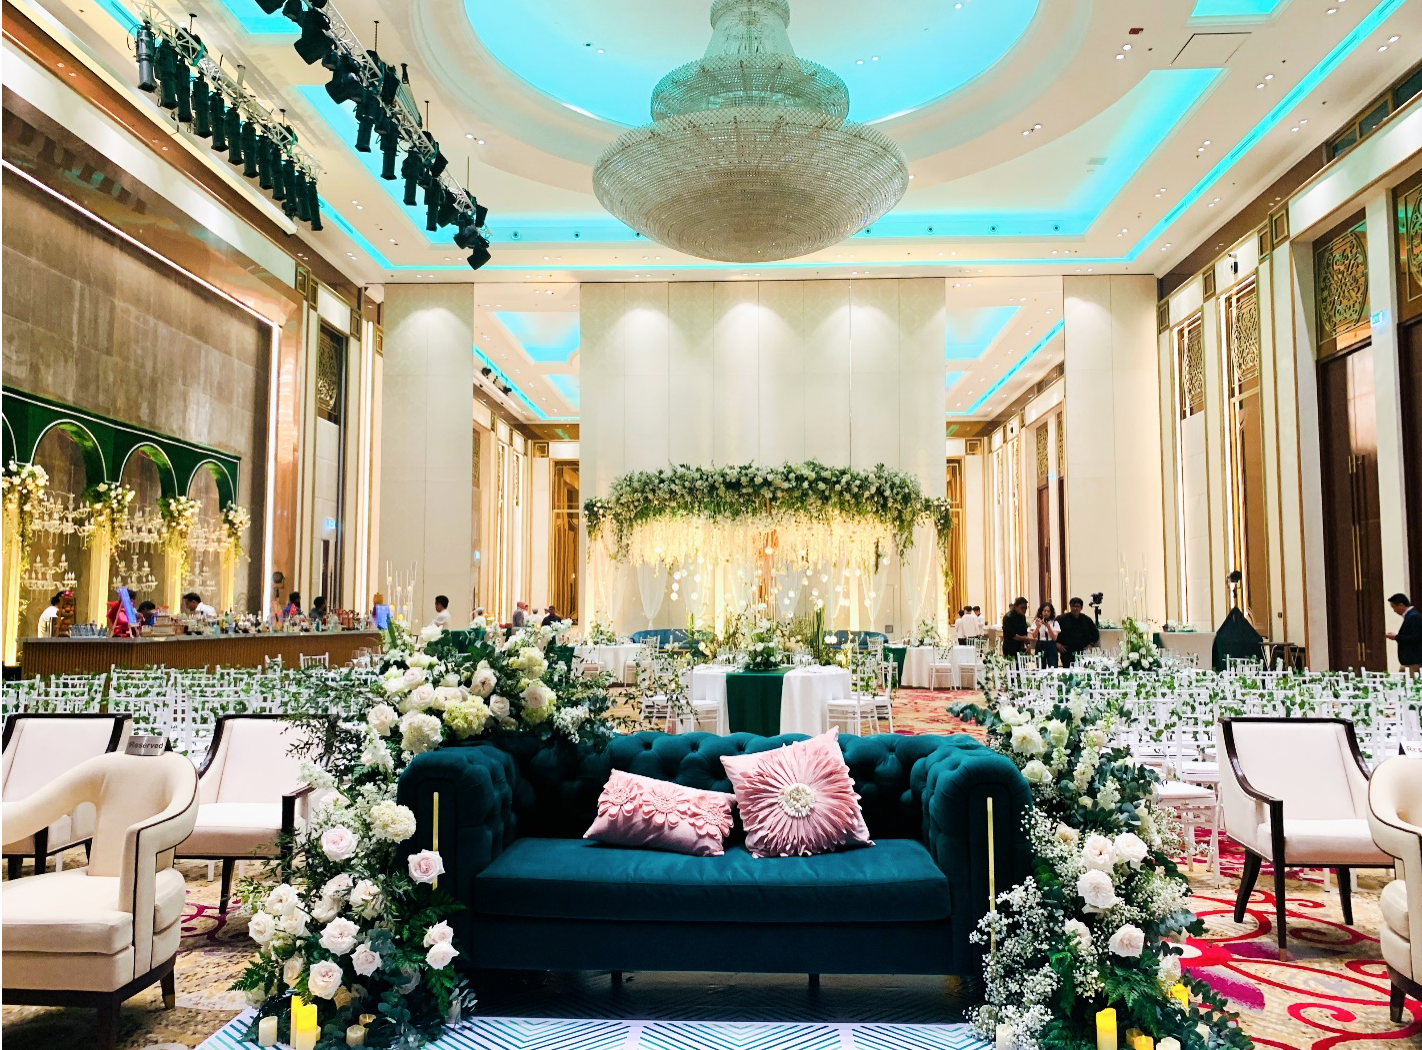 Không gian đại sảnh Grand Ballroom nơi tổ chức nghi lễ Sangeet của cô dâu và chú rể